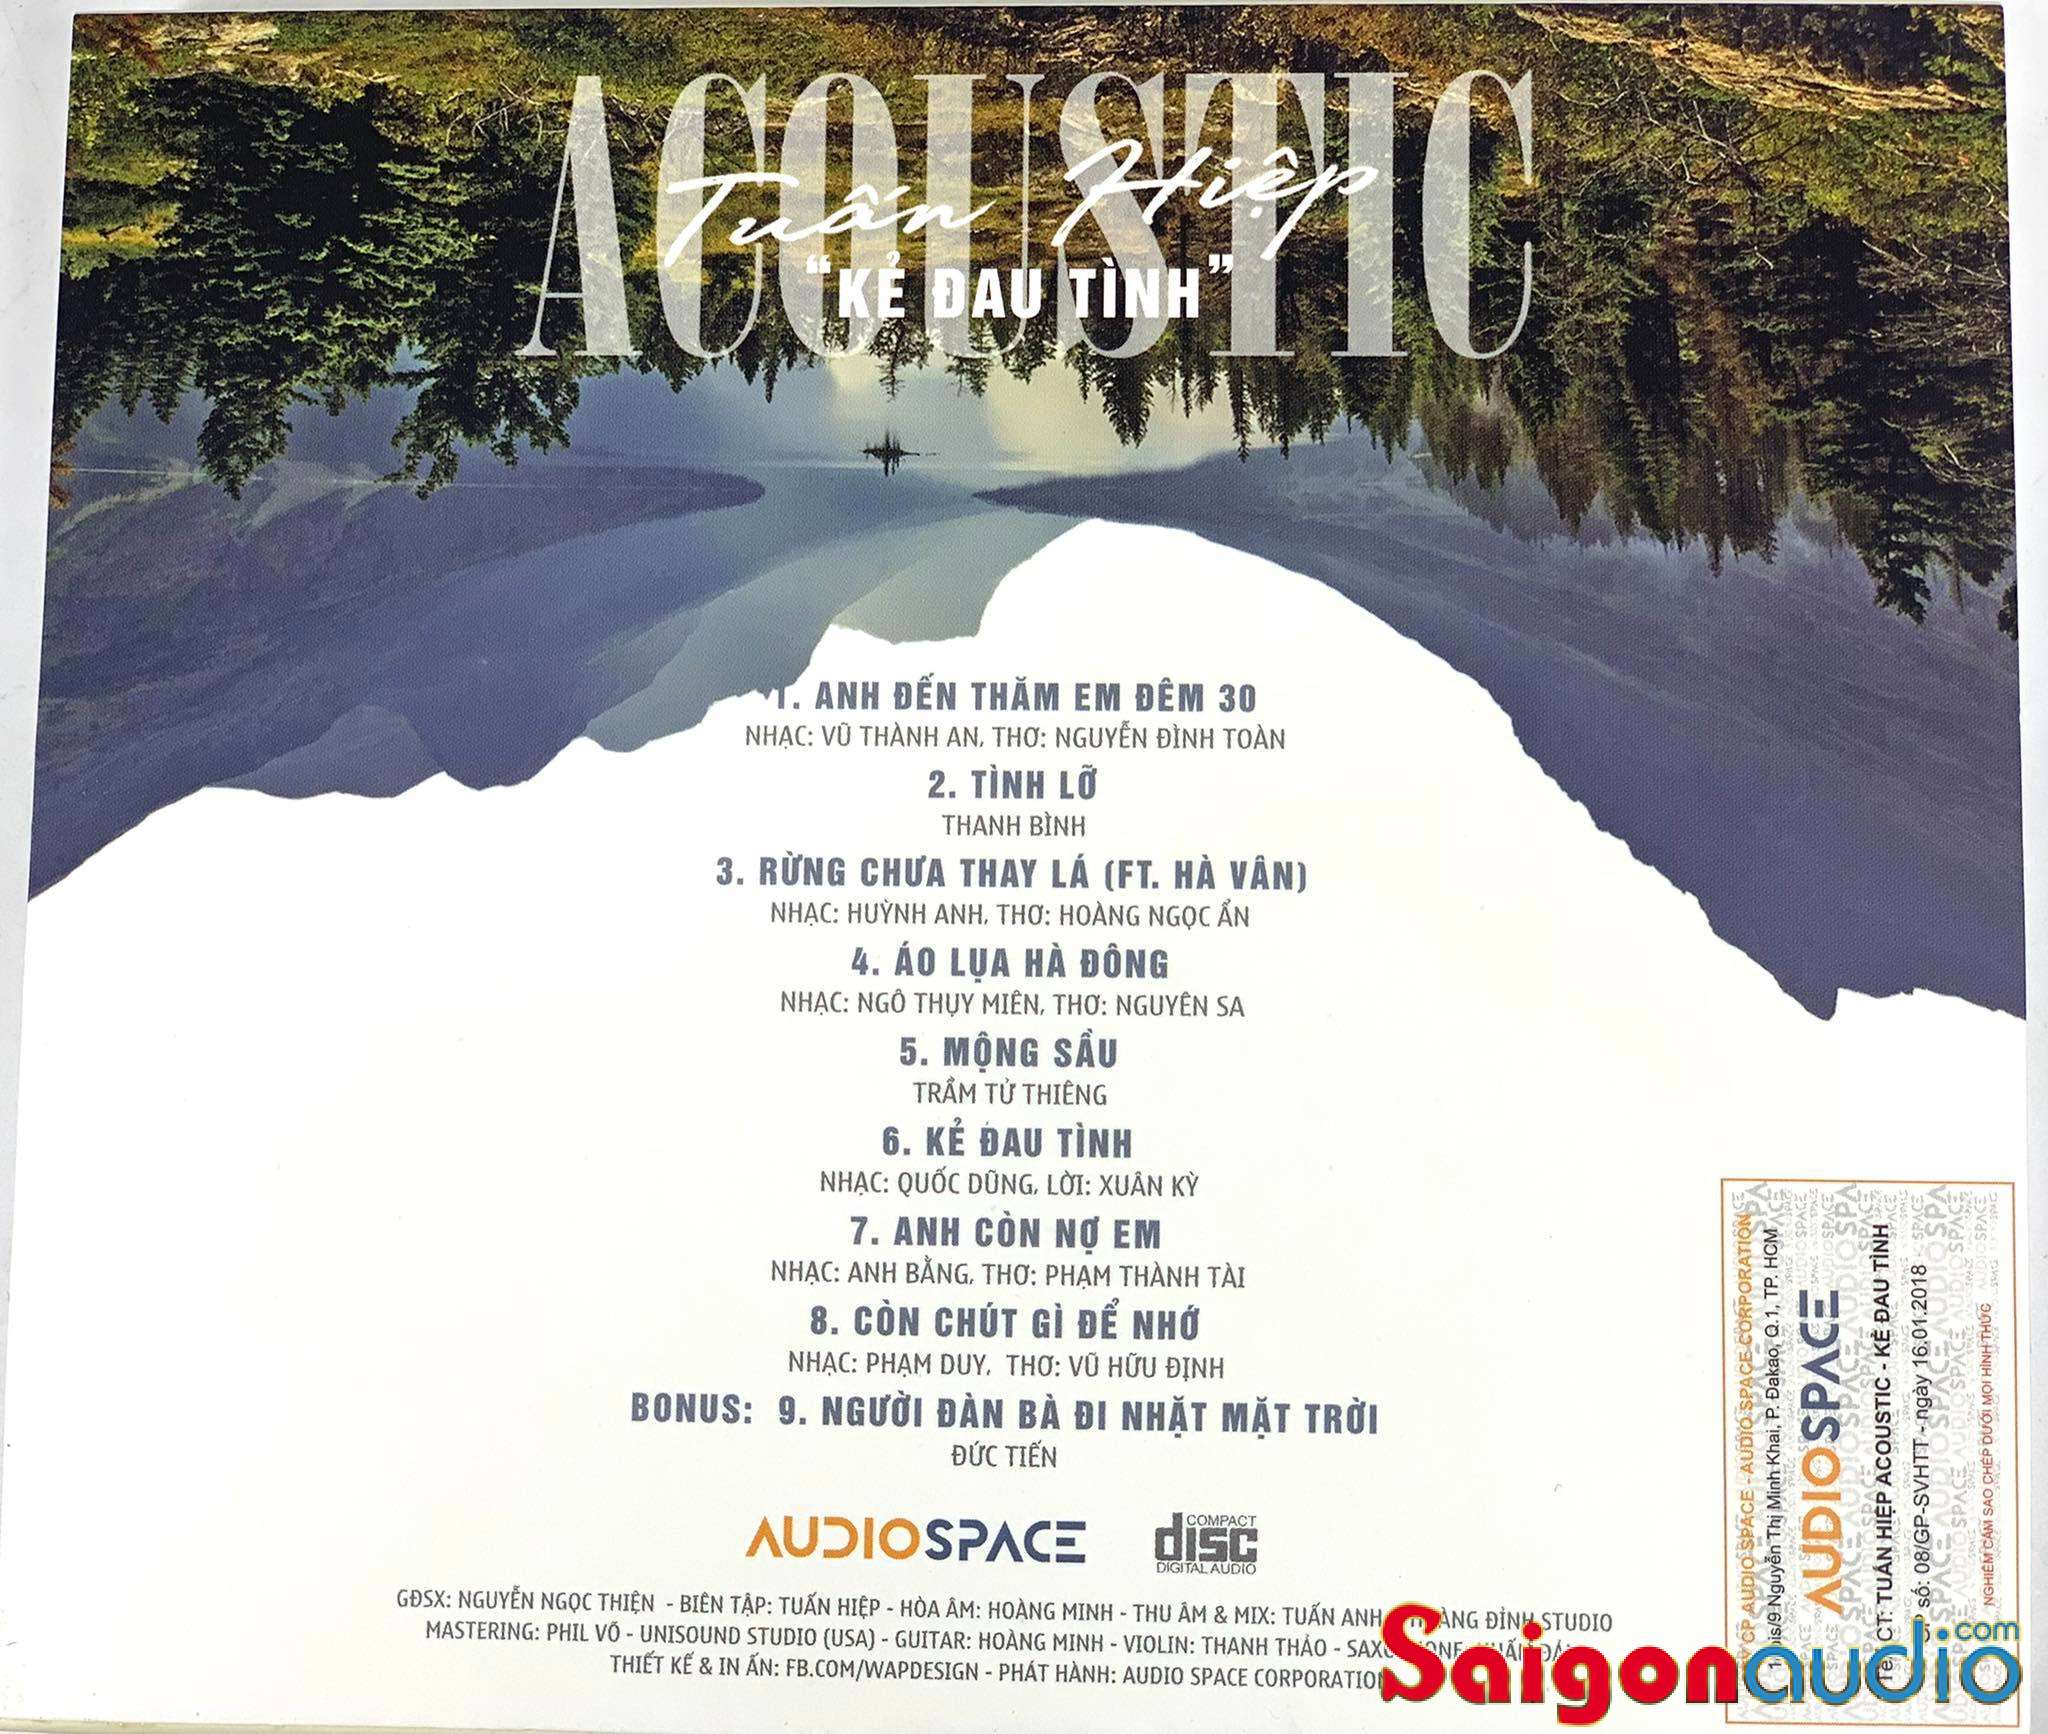 Đĩa CD gốc Tuấn Hiệp Acoustic - Kẻ Đau Tình (Free ship khi mua 2 đĩa CD cùng hoặc khác loại)